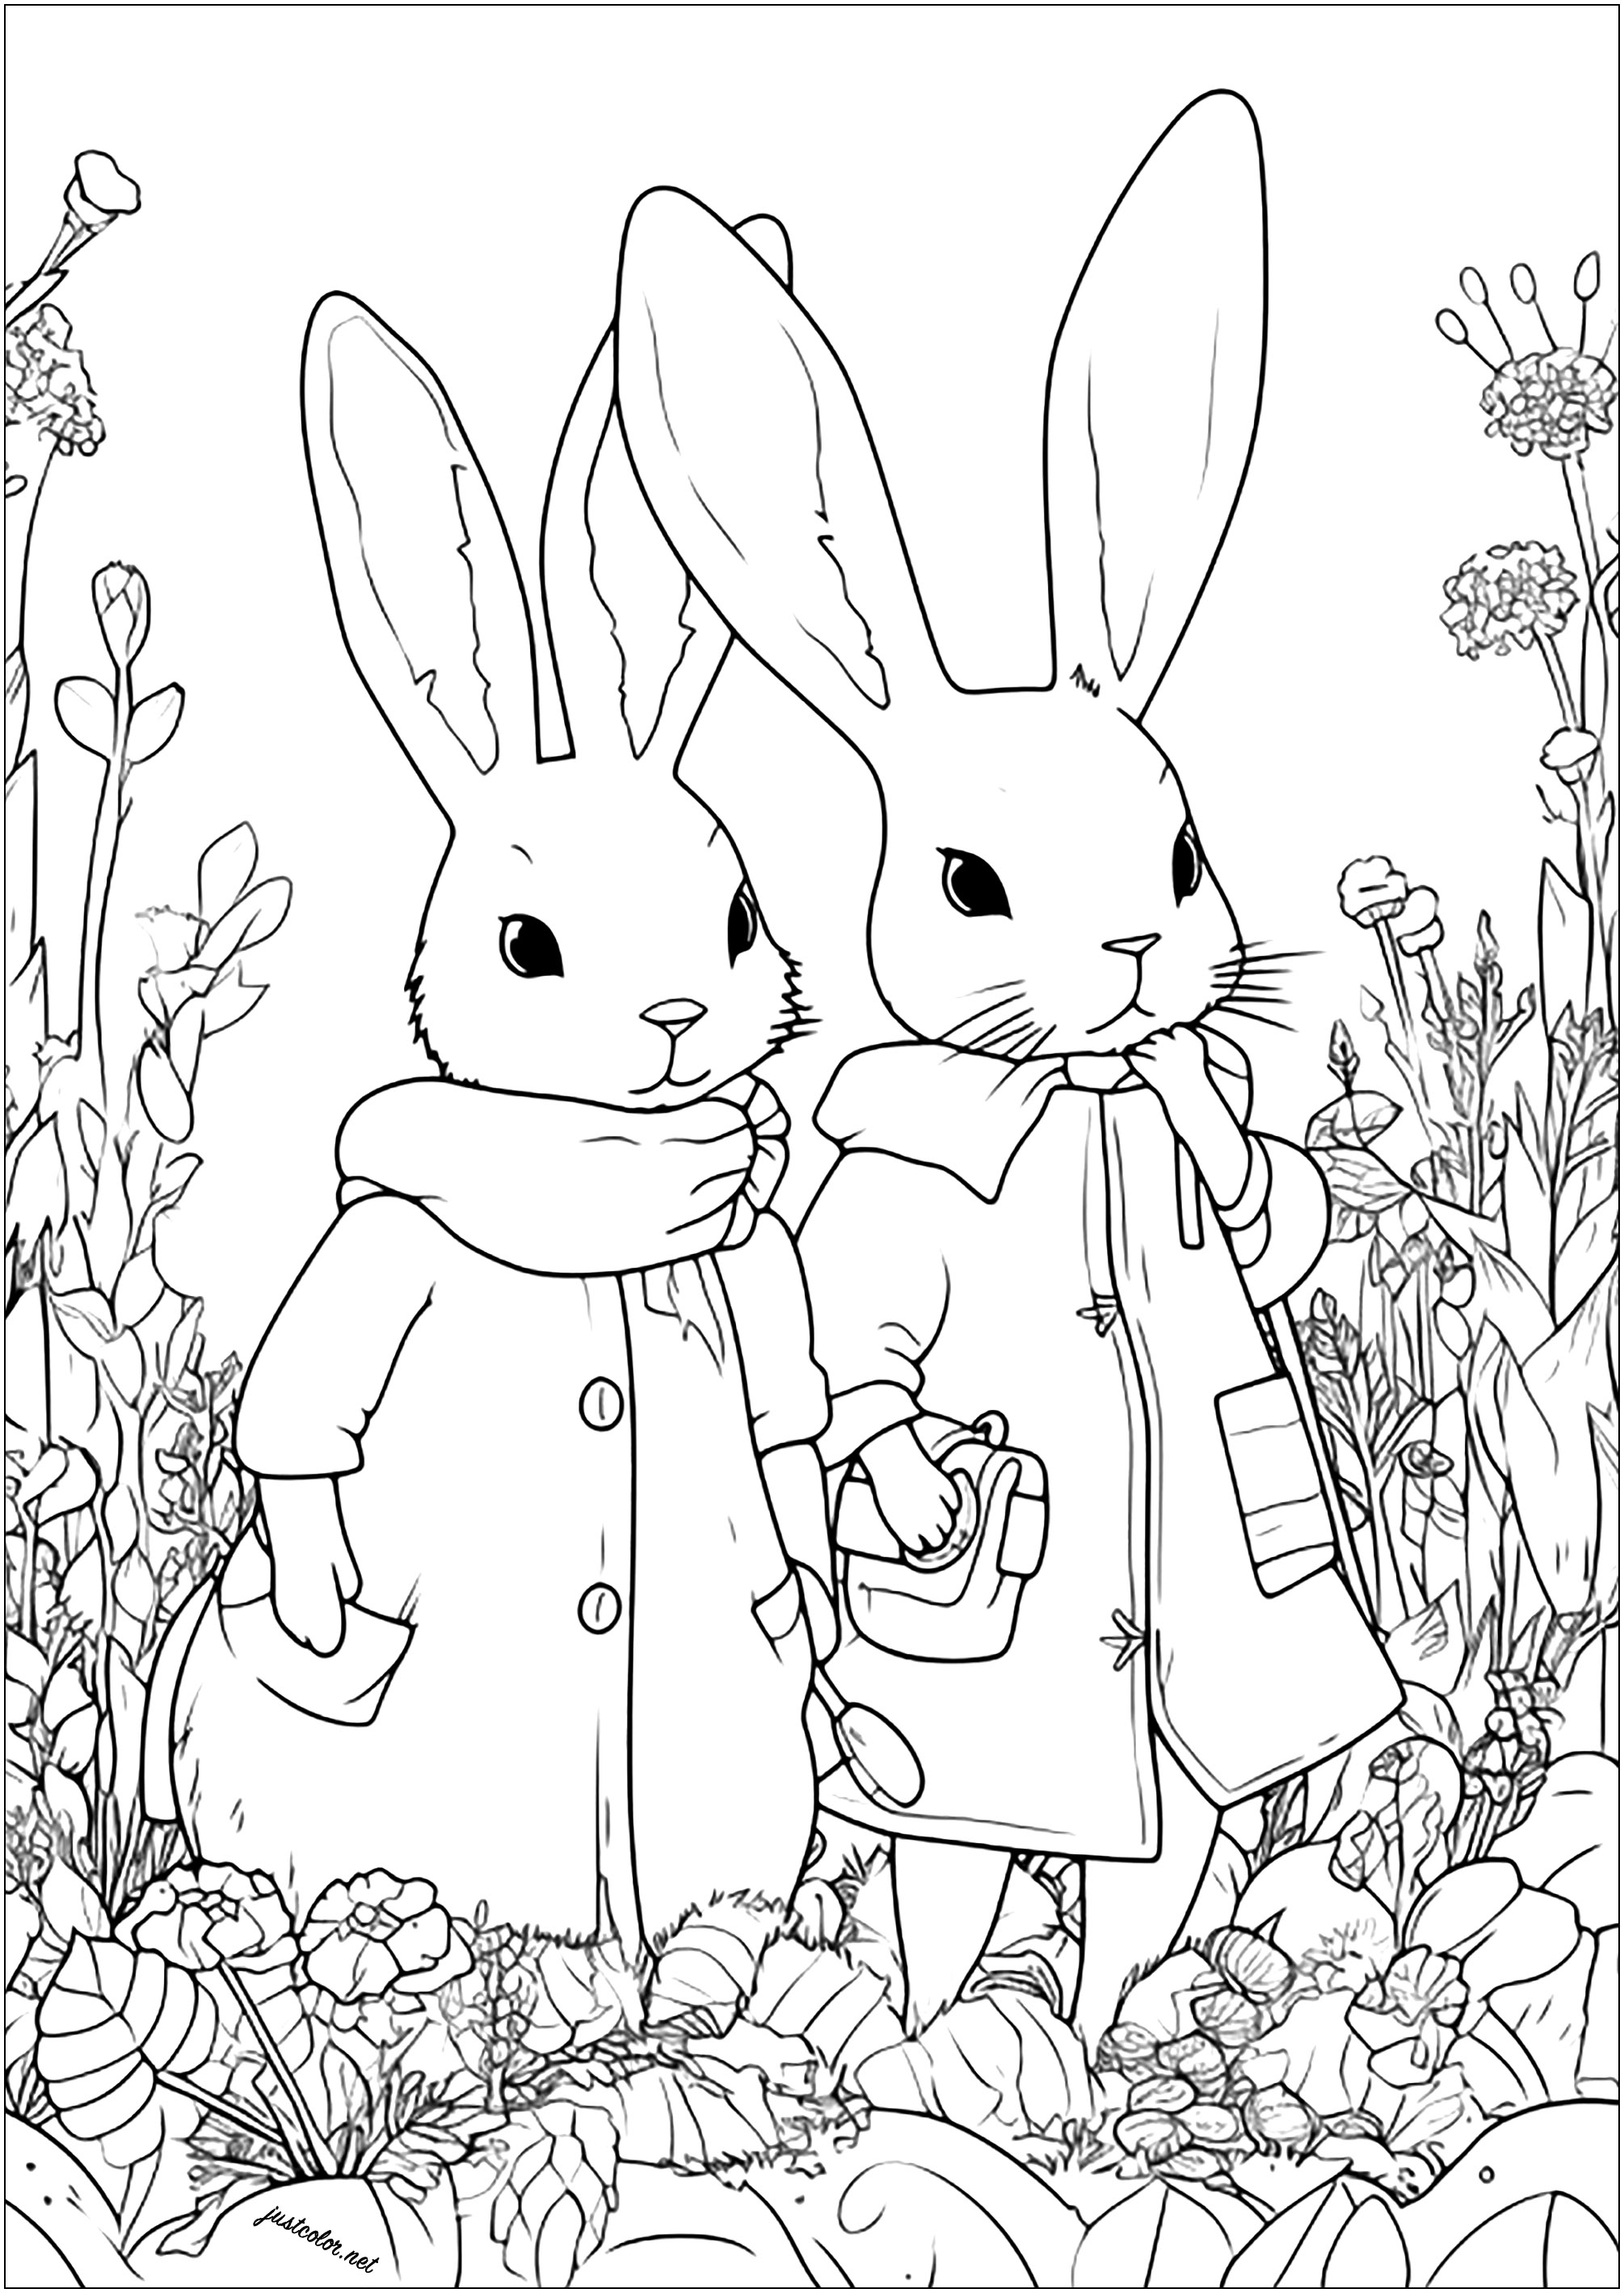 Dois coelhos aventureiros num campo de flores. Coelhos desenhados com um estilo único, prontos para partir para uma aventura ...